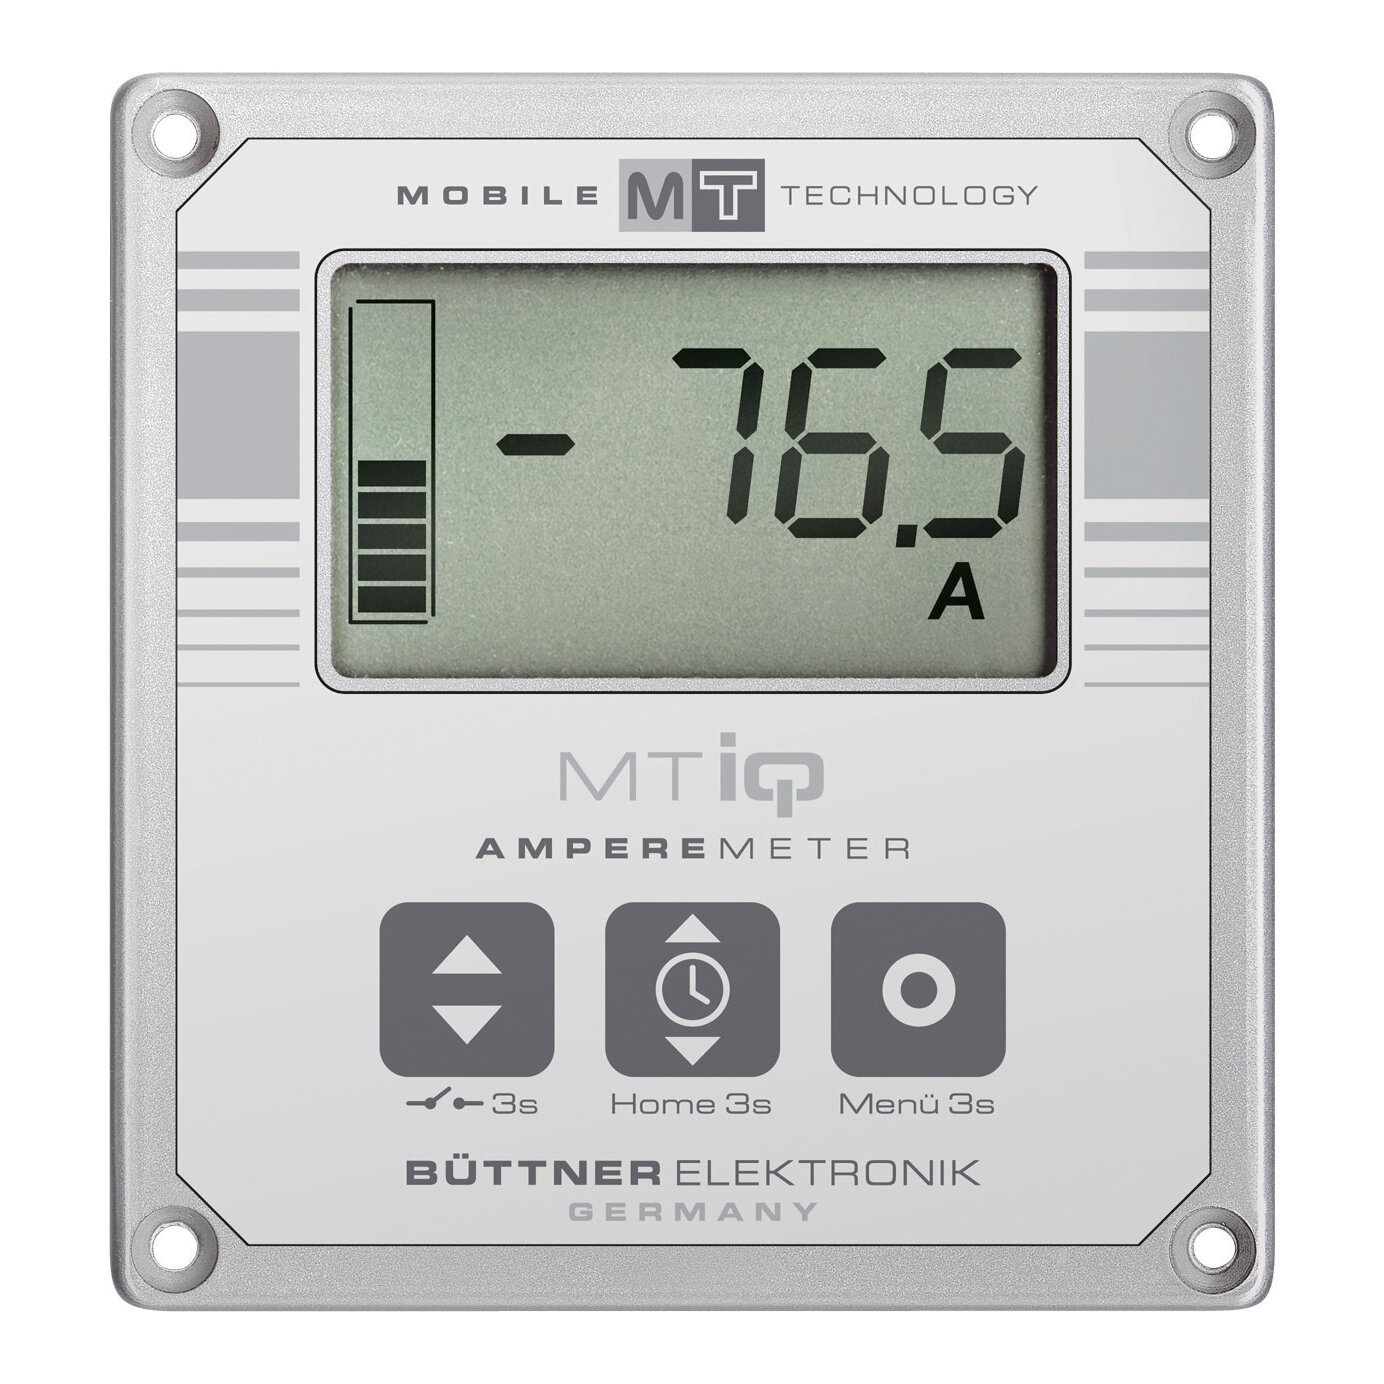 MTiQ Amperemeter